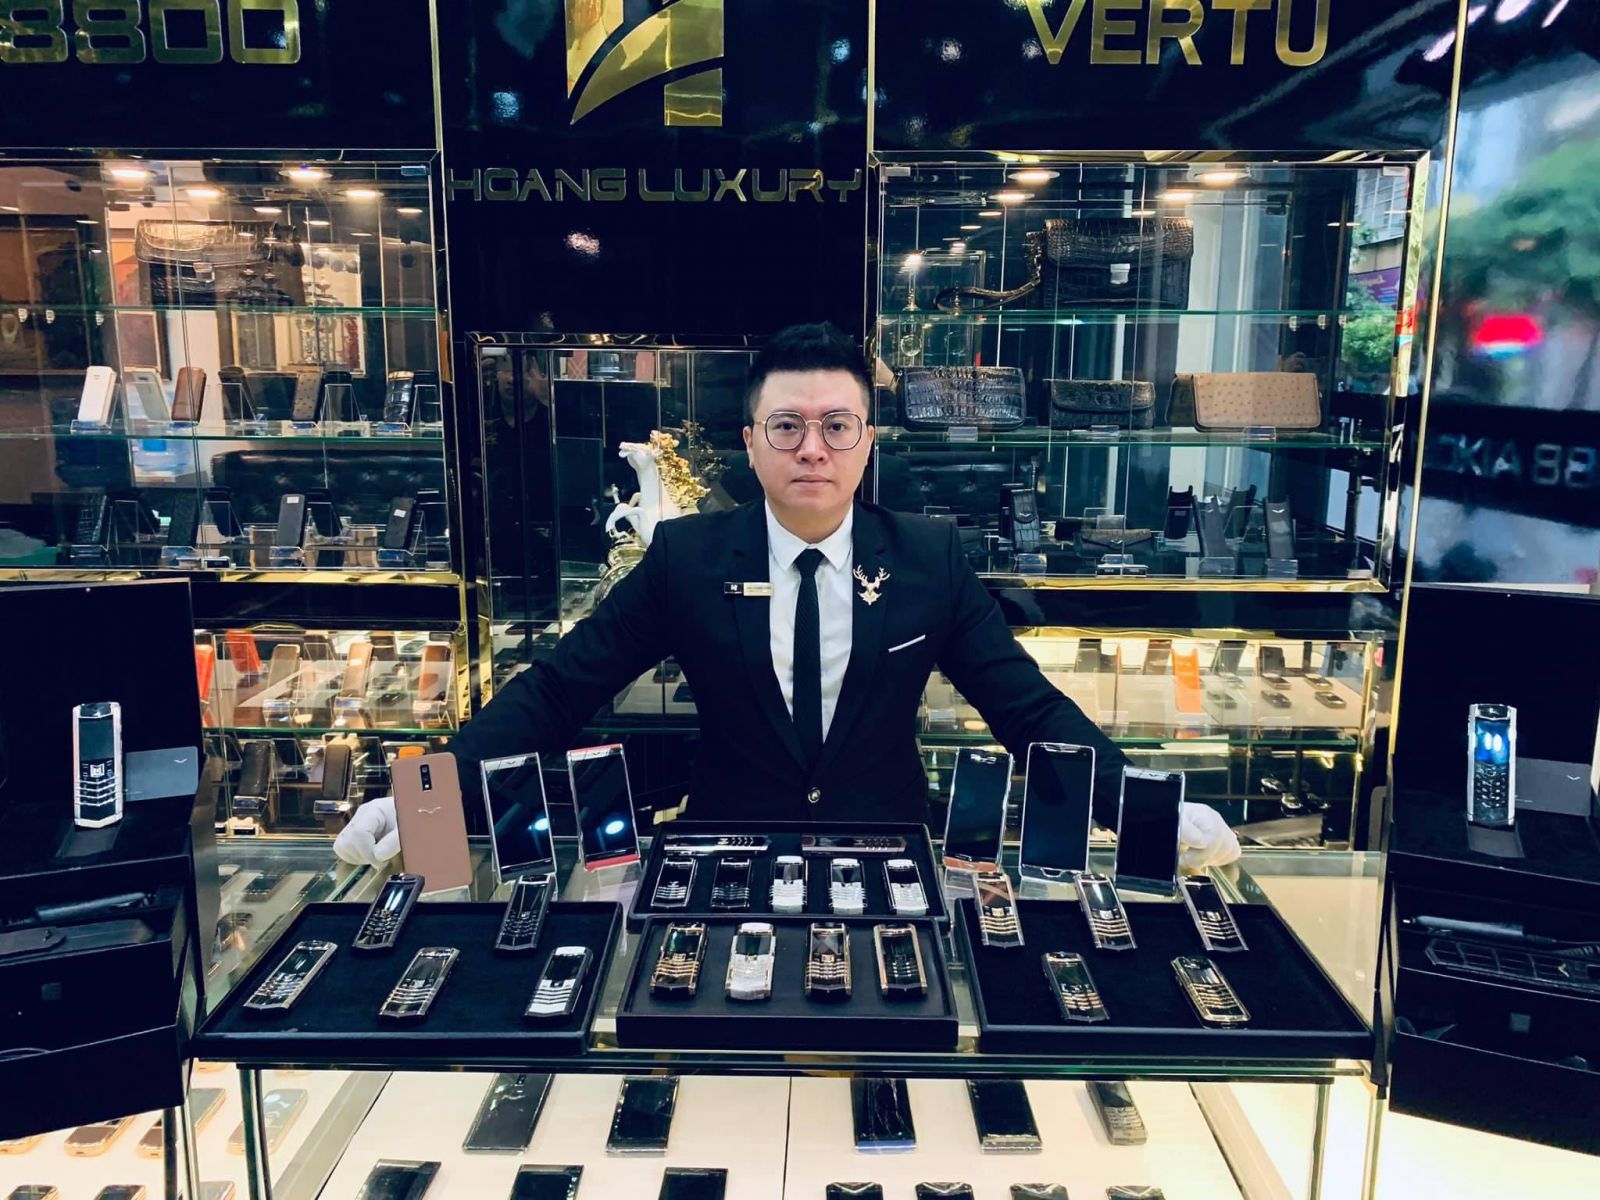 Showroom Hoàng Luxury chuyên điện thoại Vertu chính hãng